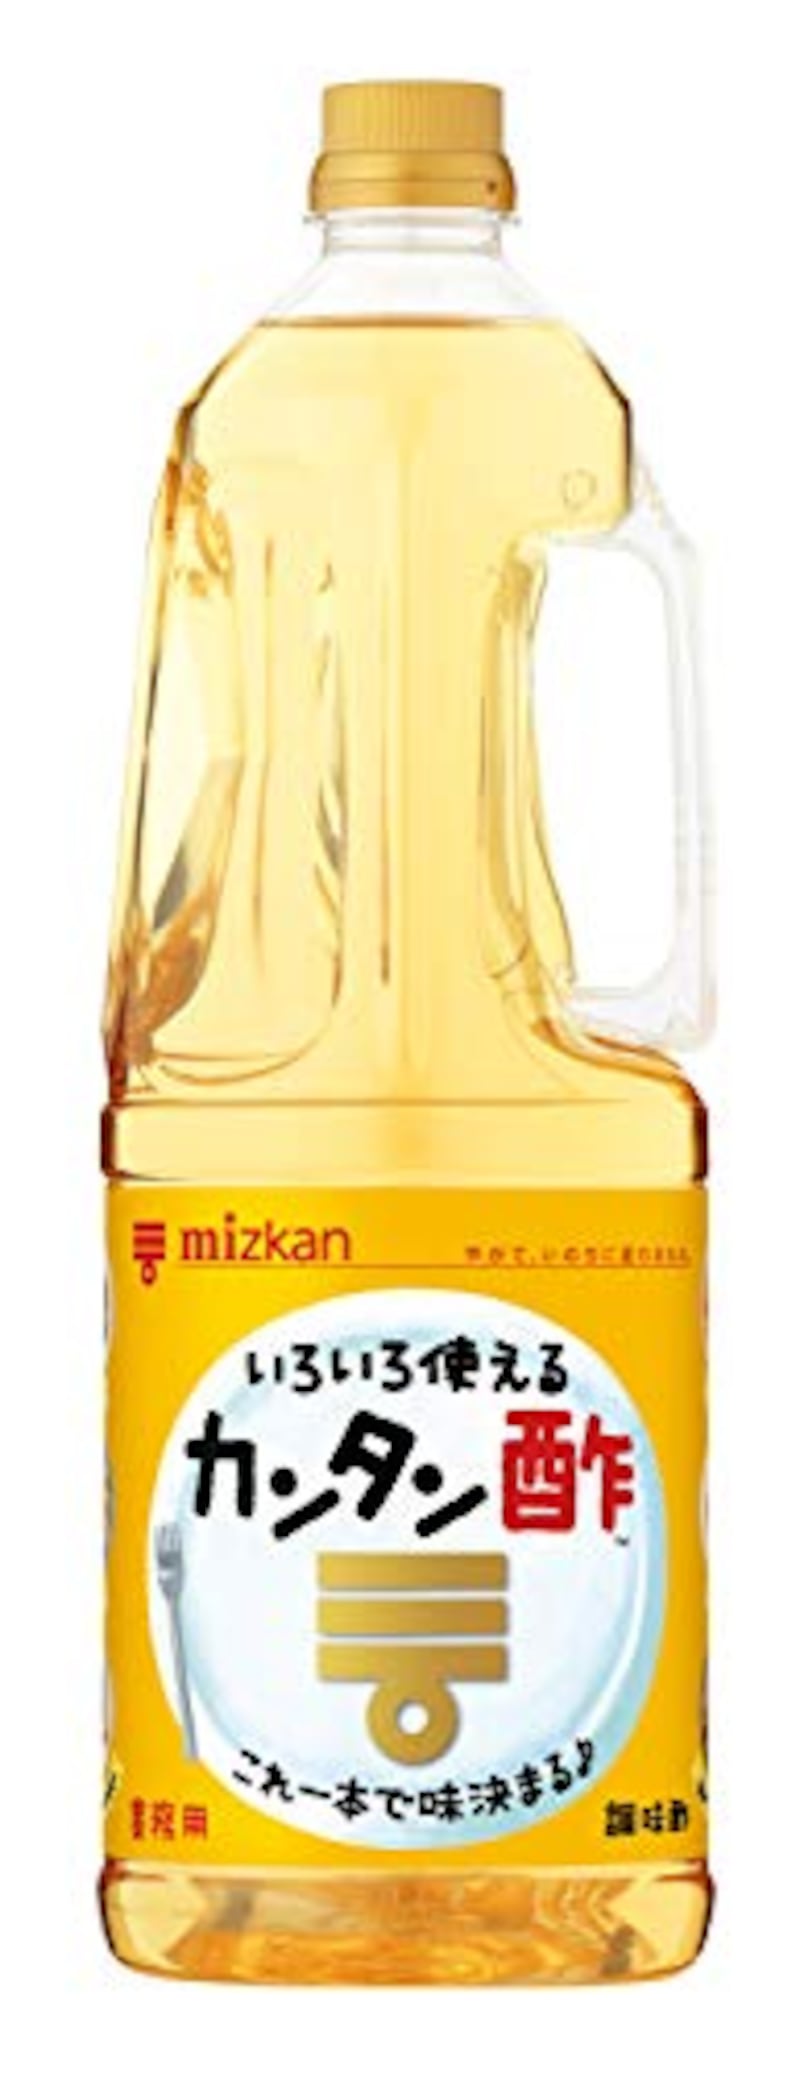 ミツカン,カンタン酢 1.8L